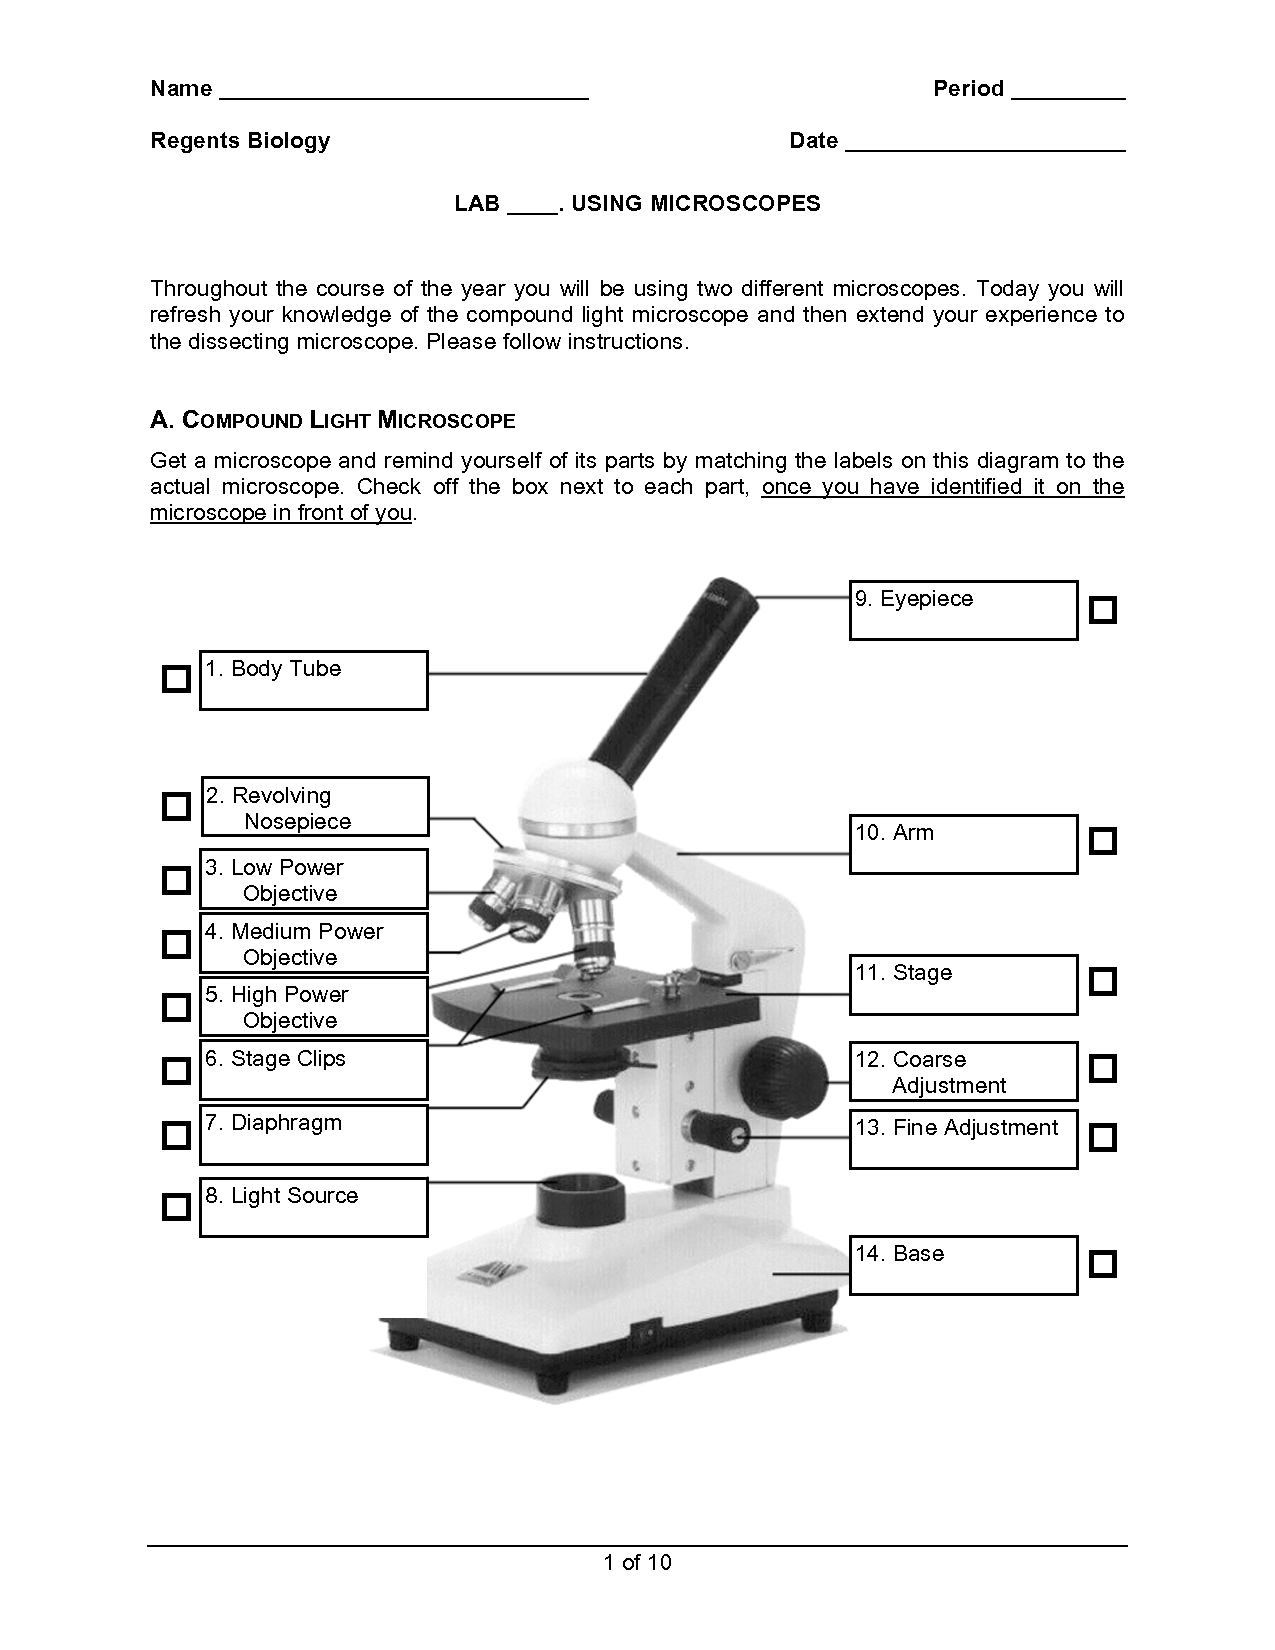 Microscope Worksheet